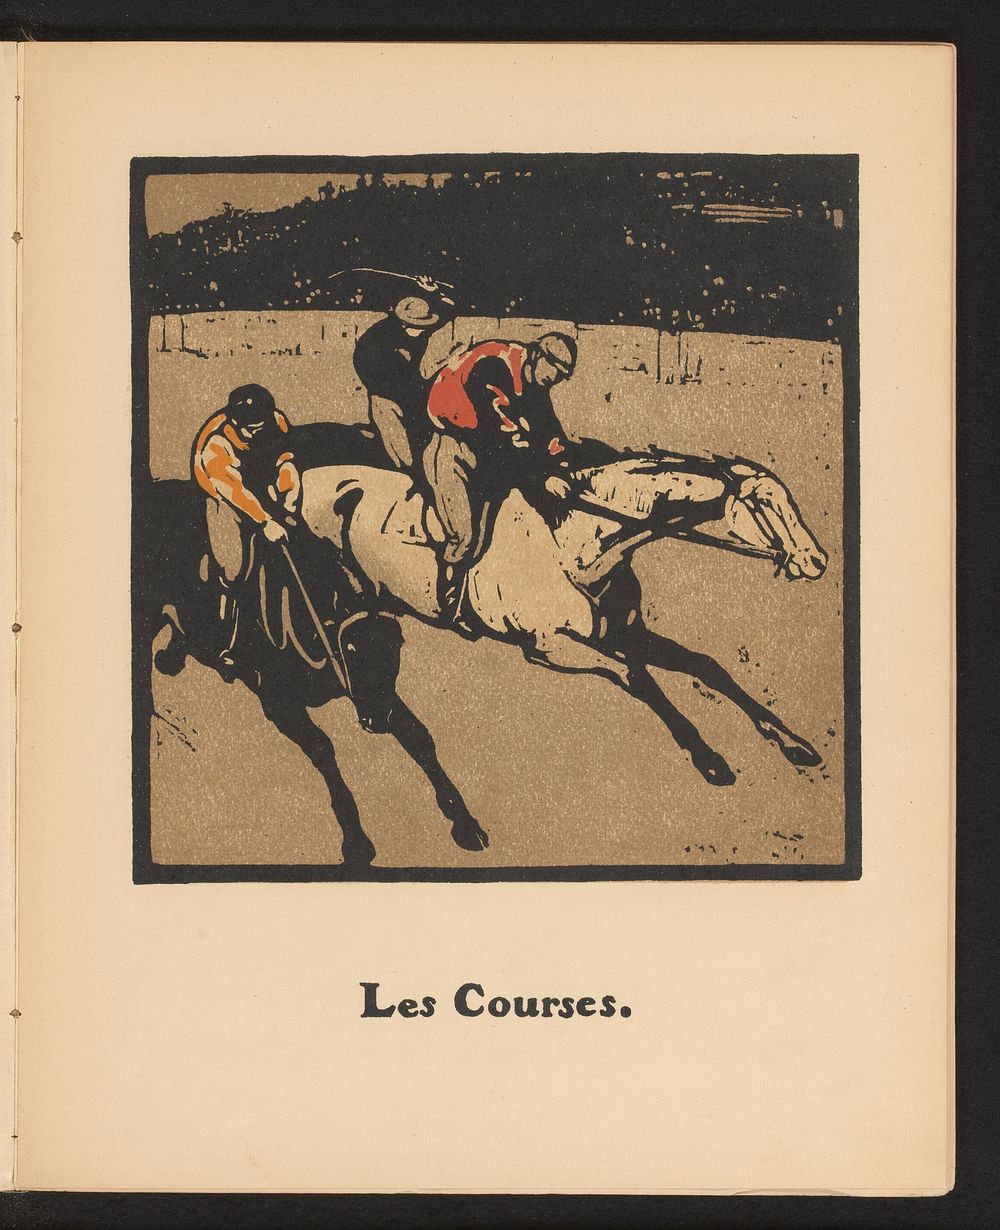 Drie jockeys op de renbaan (1898) by William Nicholson and Société Française d éditions d art